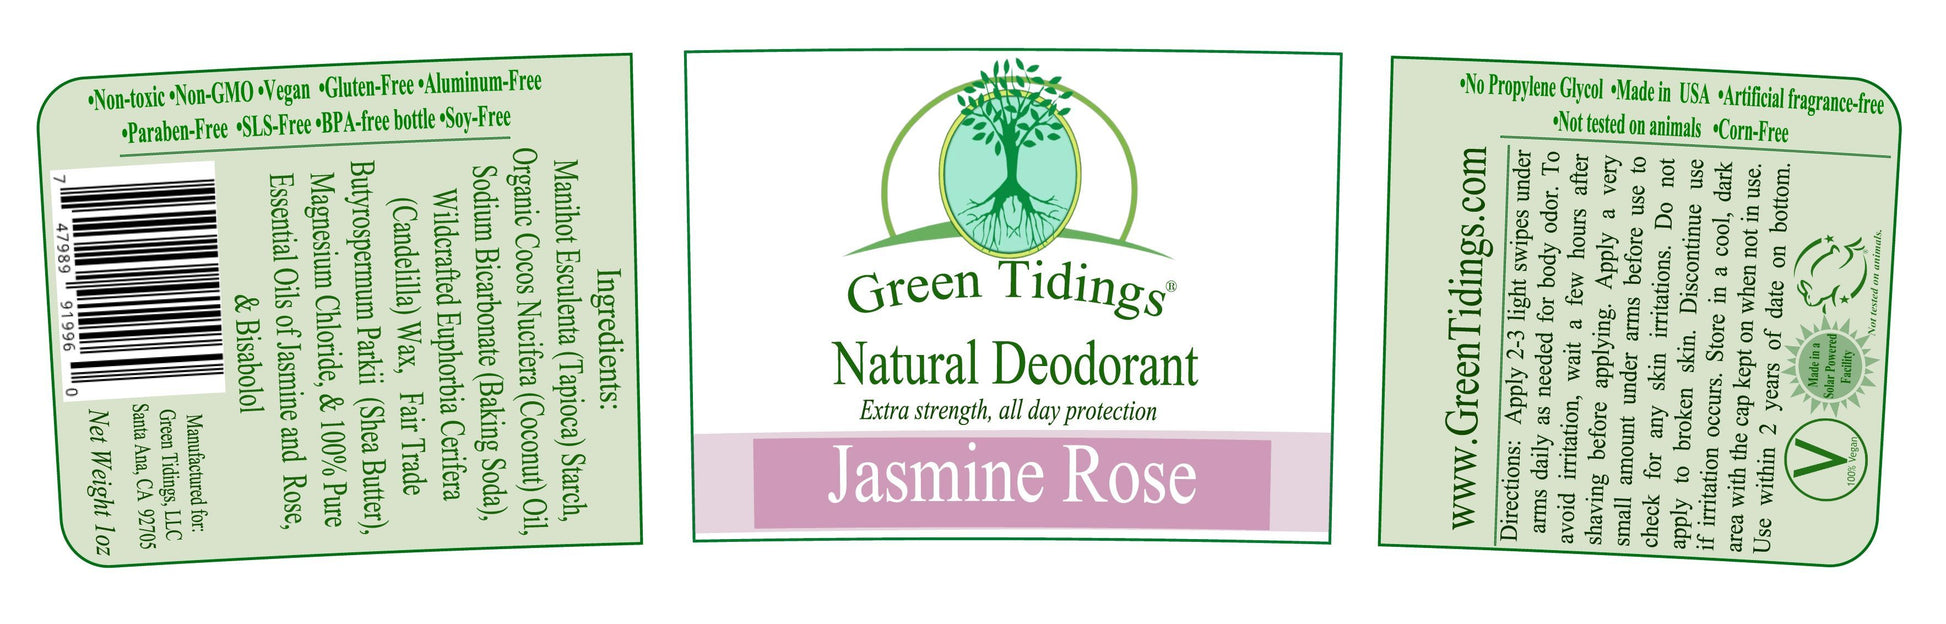 Green Tidings All Natural Deodorant- Jasmine Rose, 1 Ounce - Green Tidings